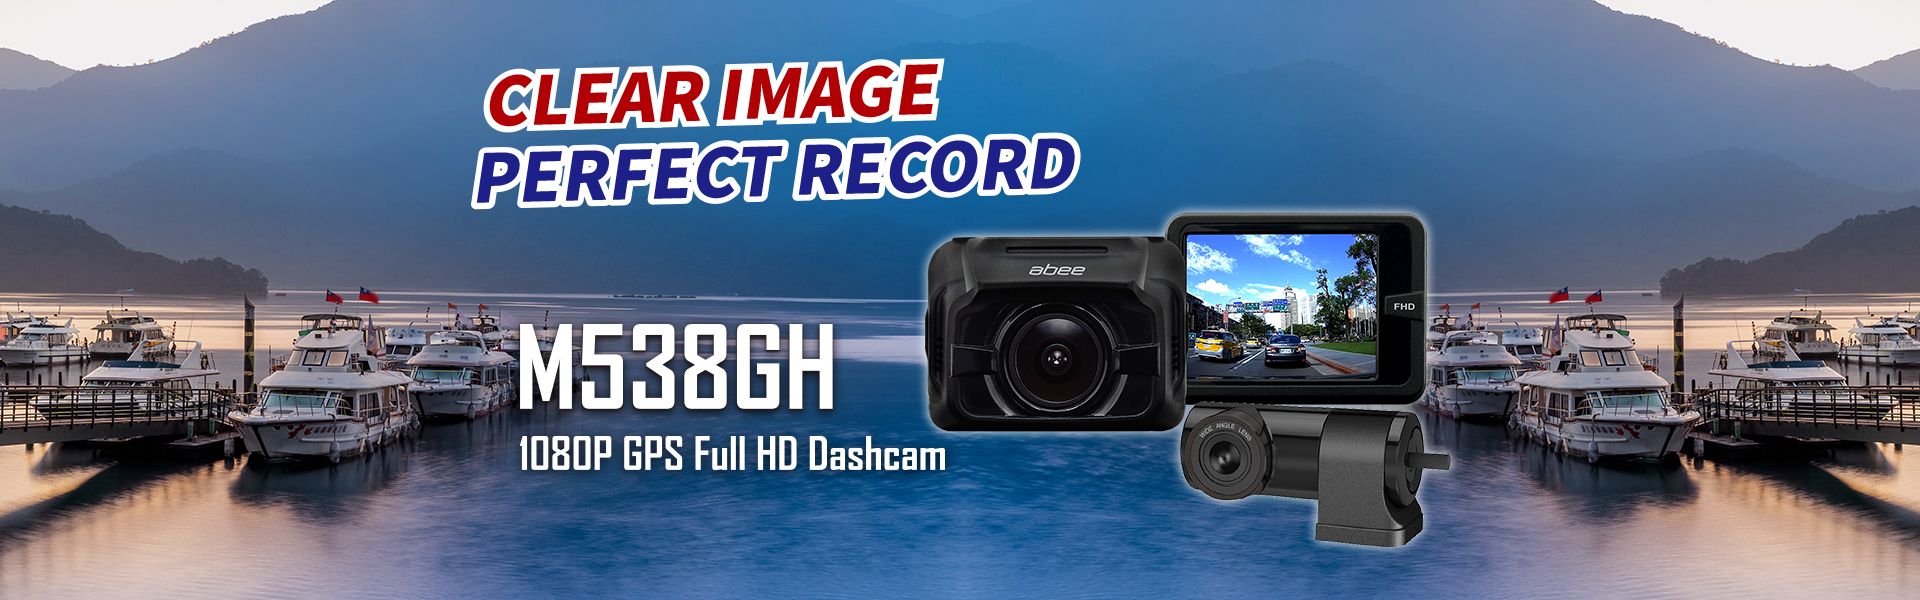 abee M538GH 1080P GPS Dash Cam